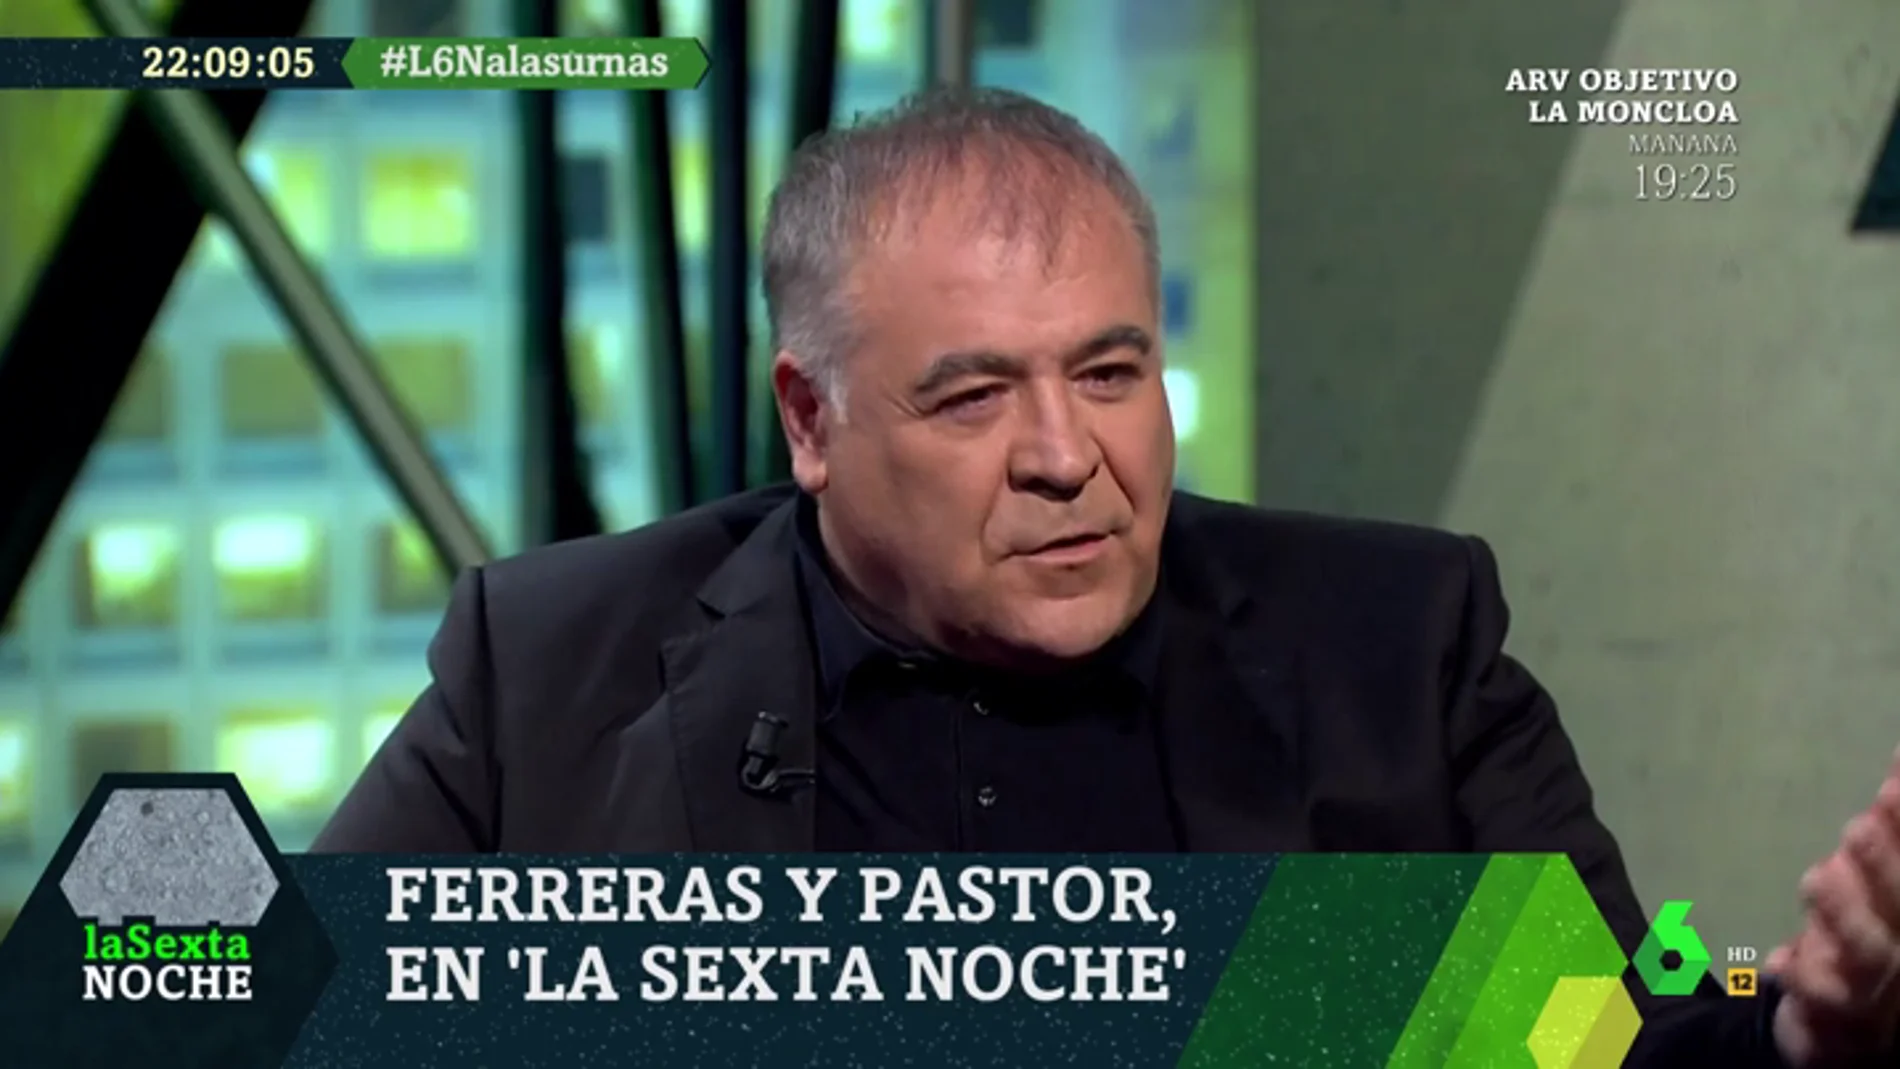 Antonio García Ferreras: "Yo sigo creyendo en la política y en nuestros políticos, incluso cuando nos decepcionan"